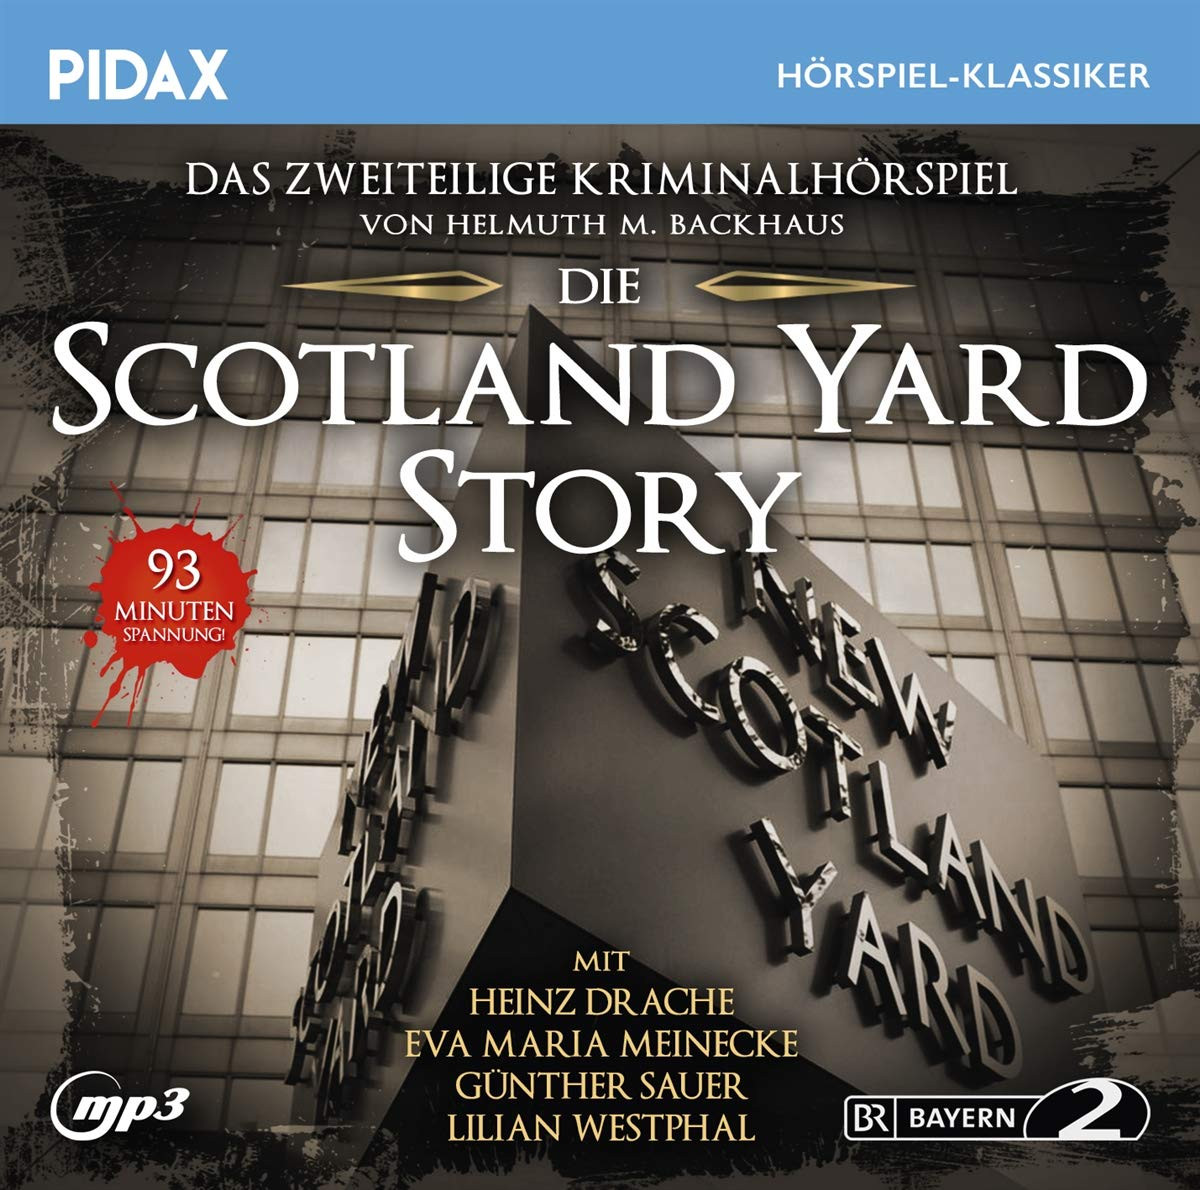 Pidax Hörspiel Klassiker - Die Scotland Yard-Story